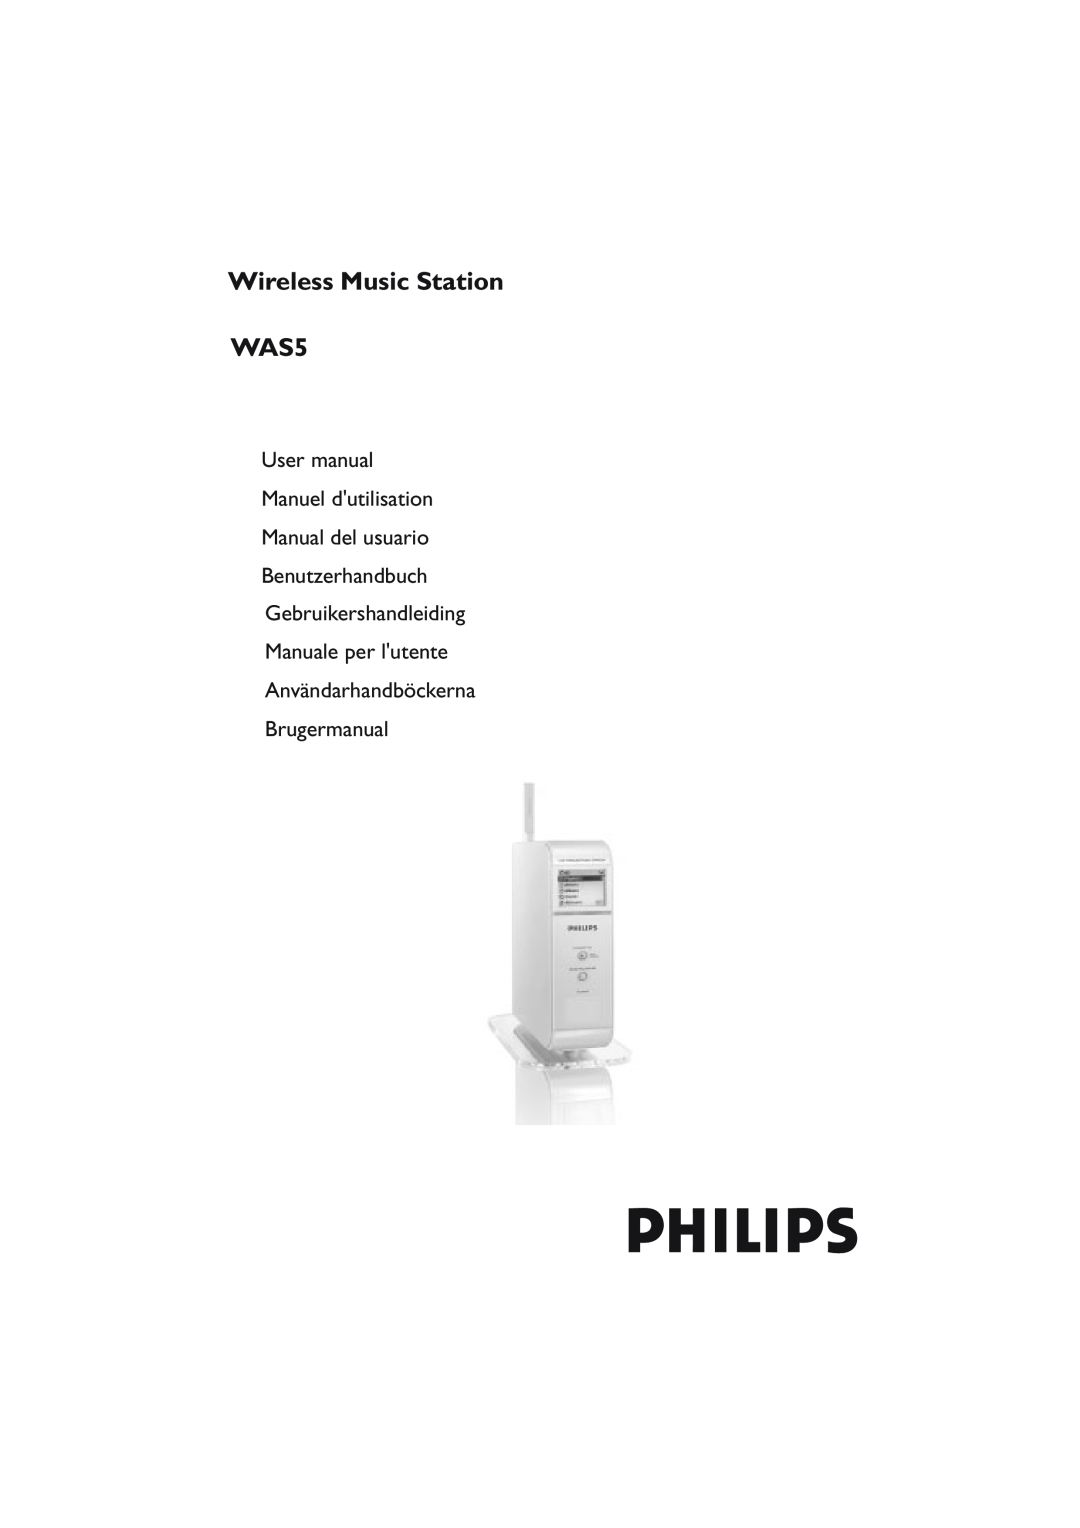 Philips WAS5 user manual Wireless Music Station, Manual del usuario Benutzerhandbuch, Användarhandböckerna Brugermanual 